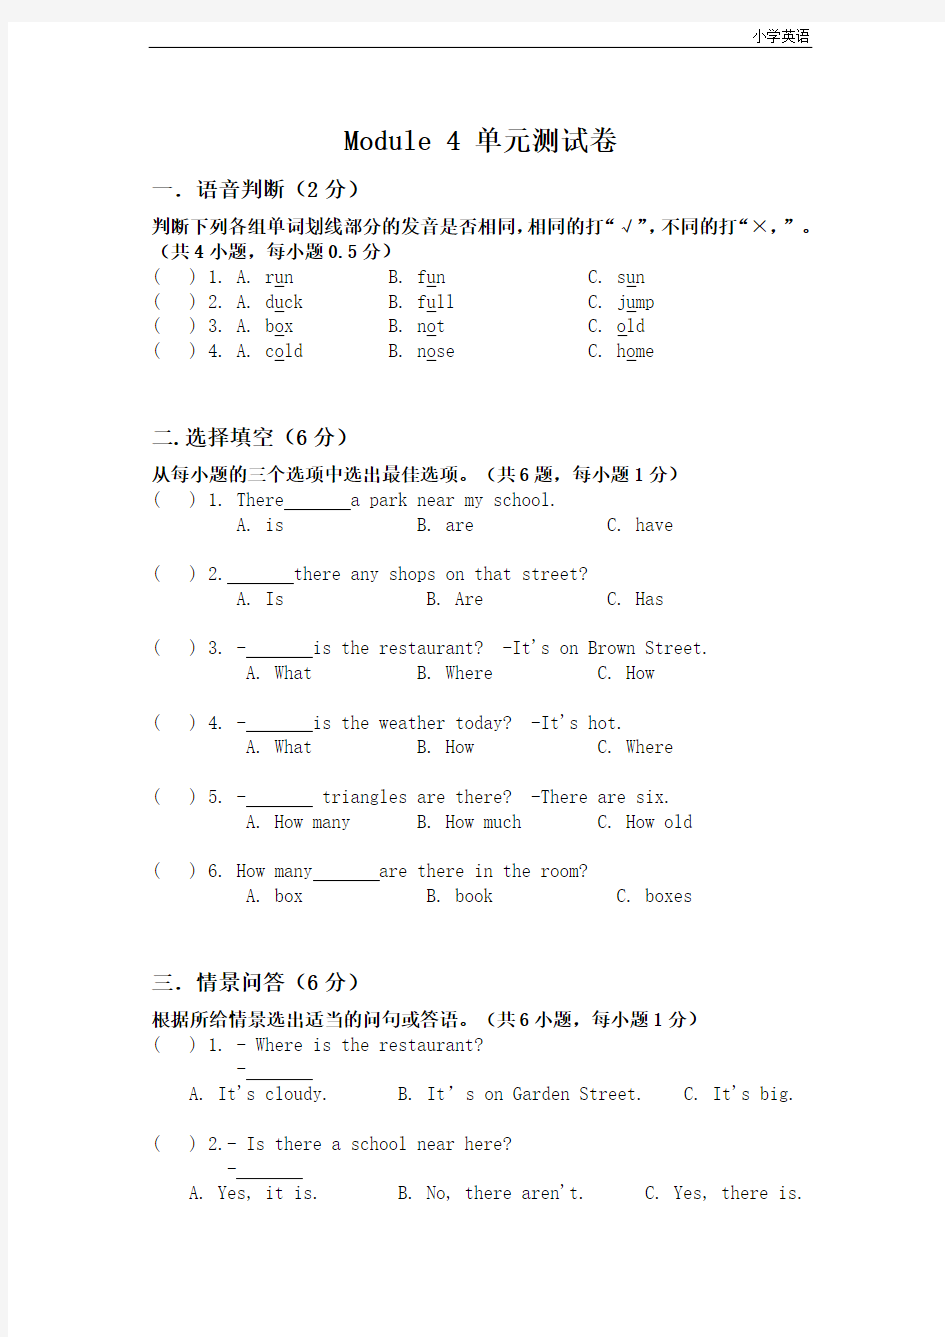 牛津上海版(深圳用)四年级上module 4 单元测试卷(含答案)